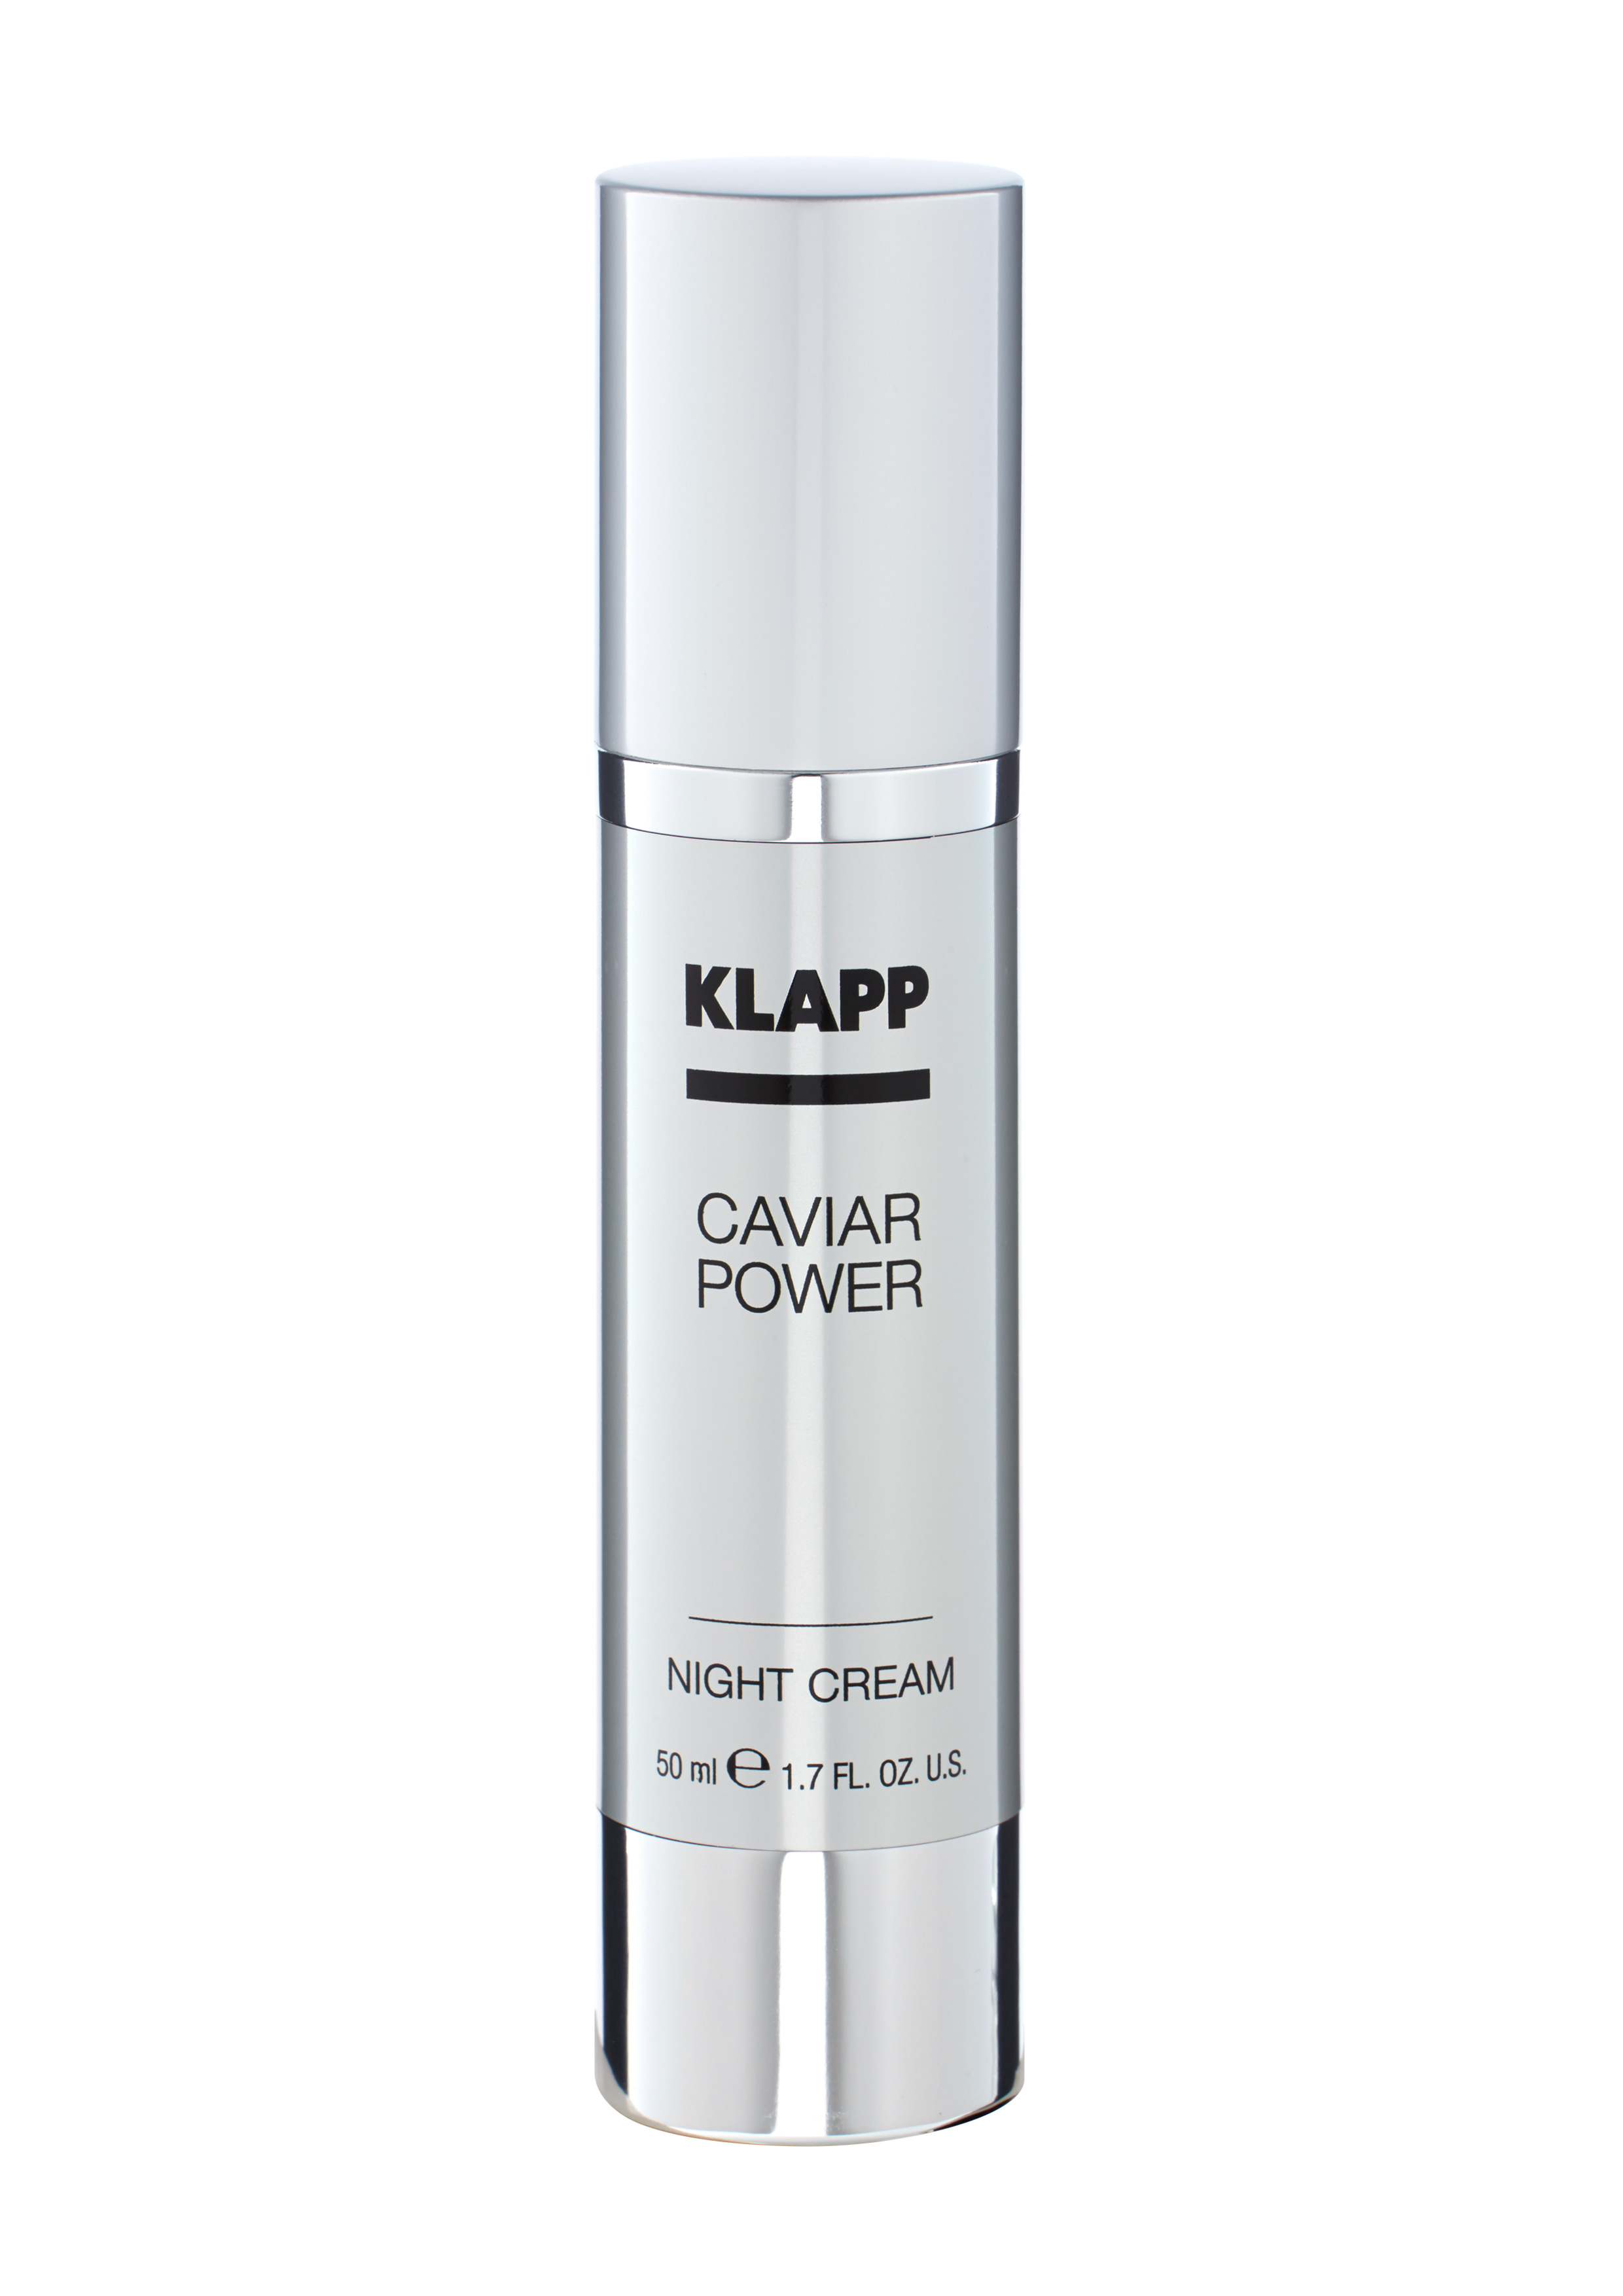 Klapp Caviar Power Night Cream